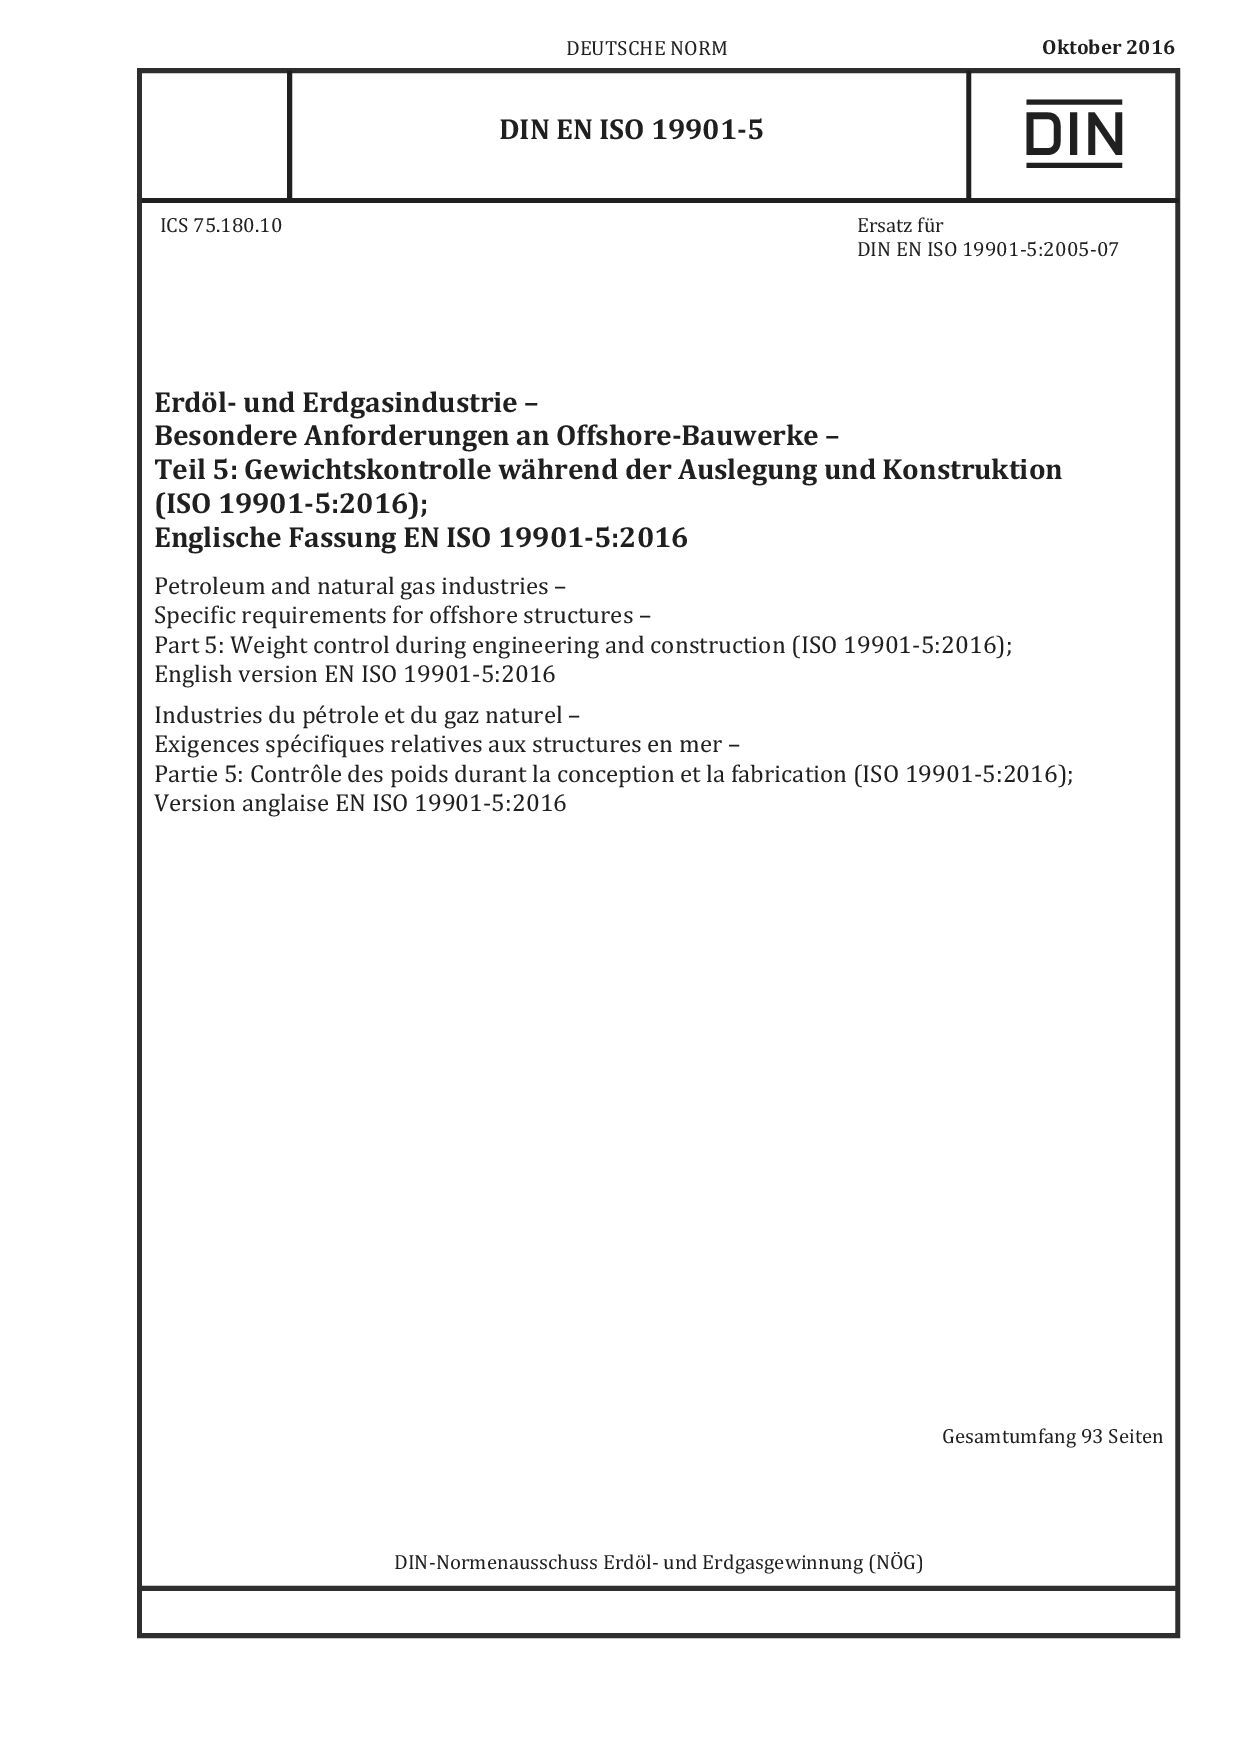 DIN EN ISO 19901-5:2016封面图